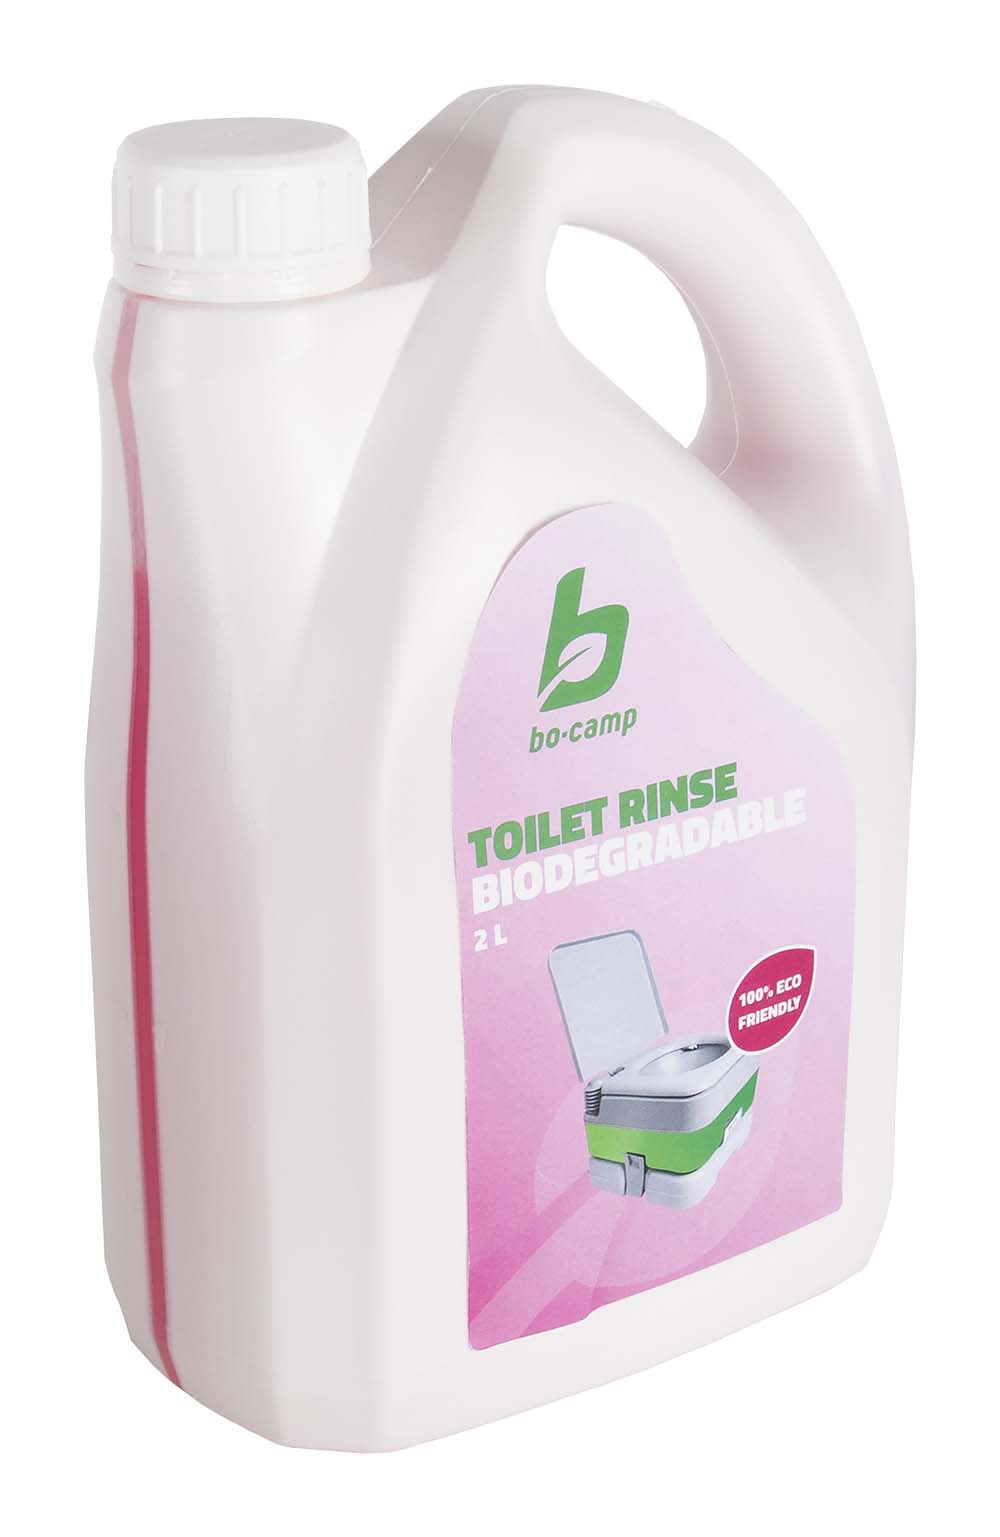 5507105 De Bo-Camp toiletvloeistof Rinse is een milieuvriendelijke, verfrissende toiletvloeistof. De vloeistof is speciaal ontwikkeld voor de spoelwatertank van het chemisch toilet. Een flacon van 2 liter is geschikt voor ca. 20 keer navullen. De vloeistof is biologisch afbreekbaar, door de vloeistof worden vervelende geurtjes en bacteriën afgebroken en zorgt voor een aangename geur. Tevens helpt de vloeistof kalkaanslag voorkomen en laat het een beschermende laag achter in het chemisch toilet.